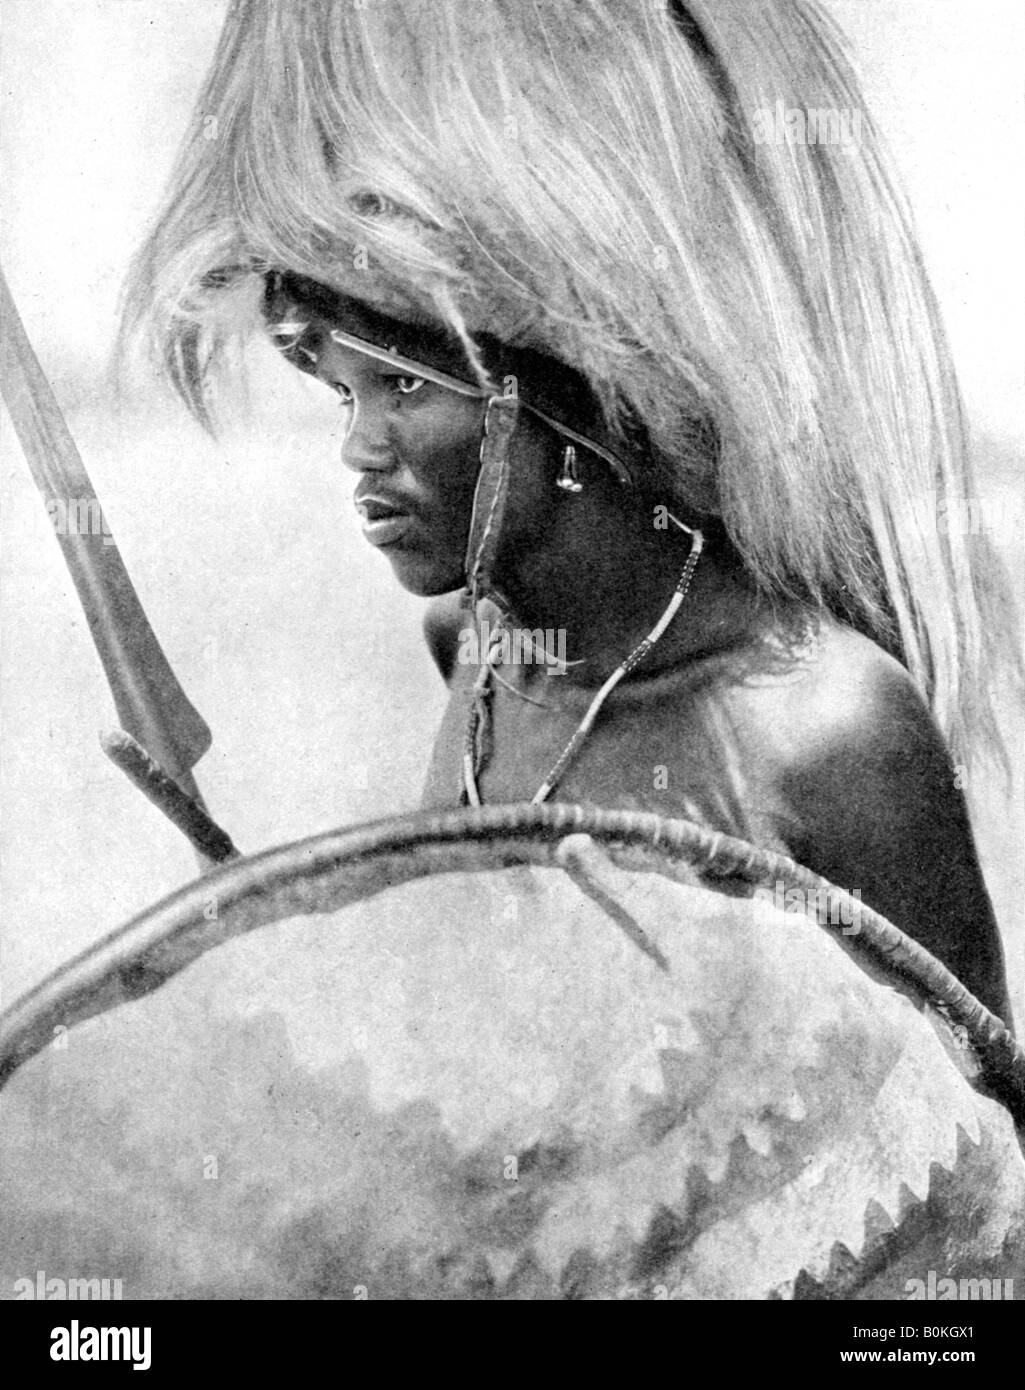 Un guerriero Masai, Africa, 1936.Artista: Ampia Foto del Mondo Foto Stock